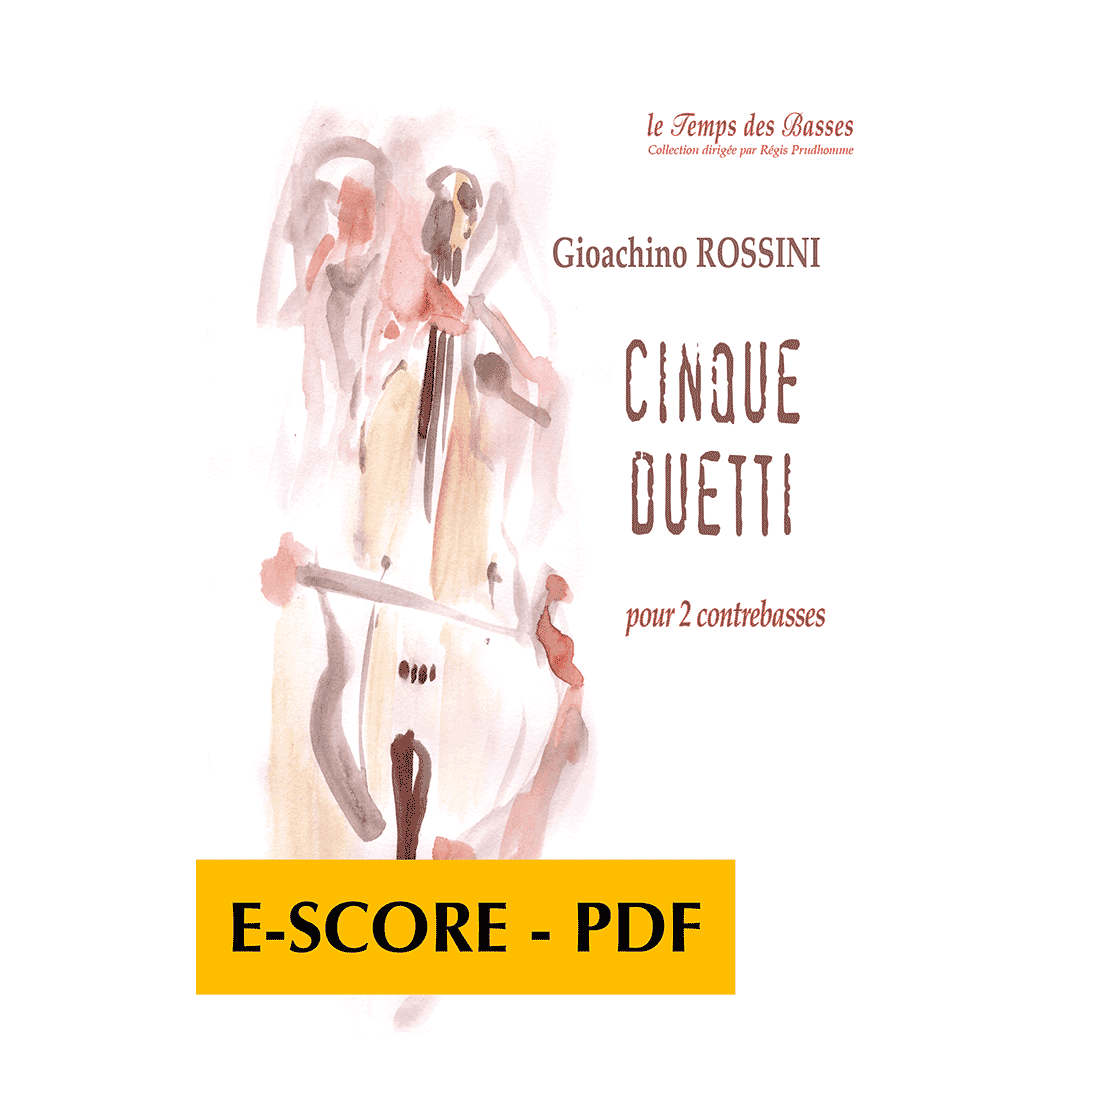 Cinque duetti pour 2 contrebasses - E-score PDF